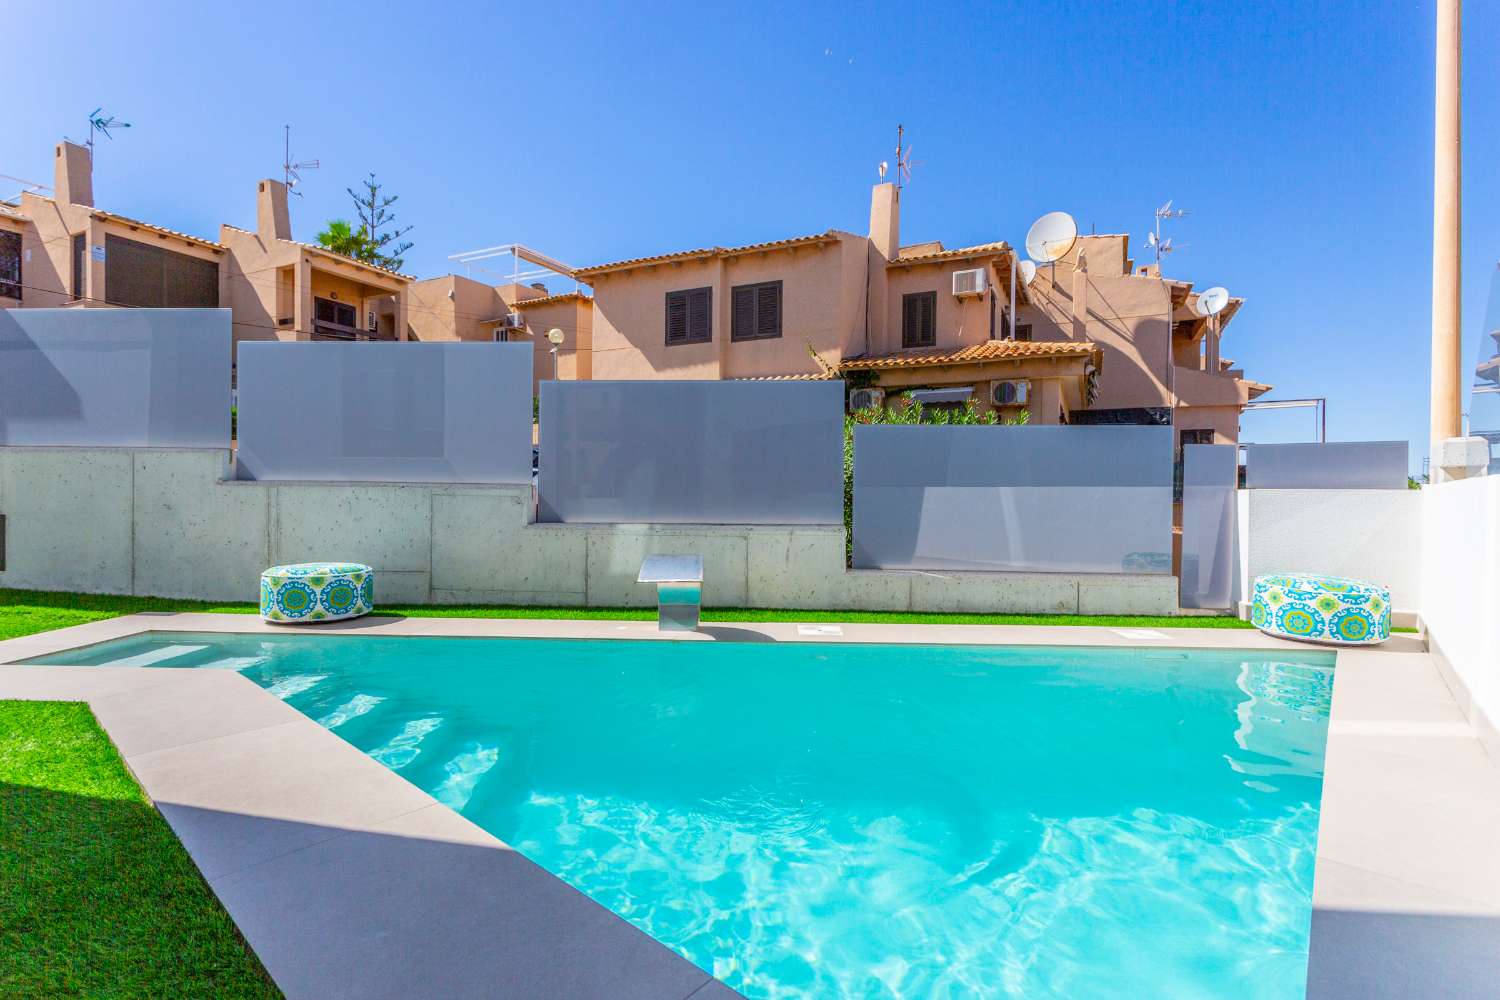 Fristående villa 80M från havet med privat pool och jacuzzi